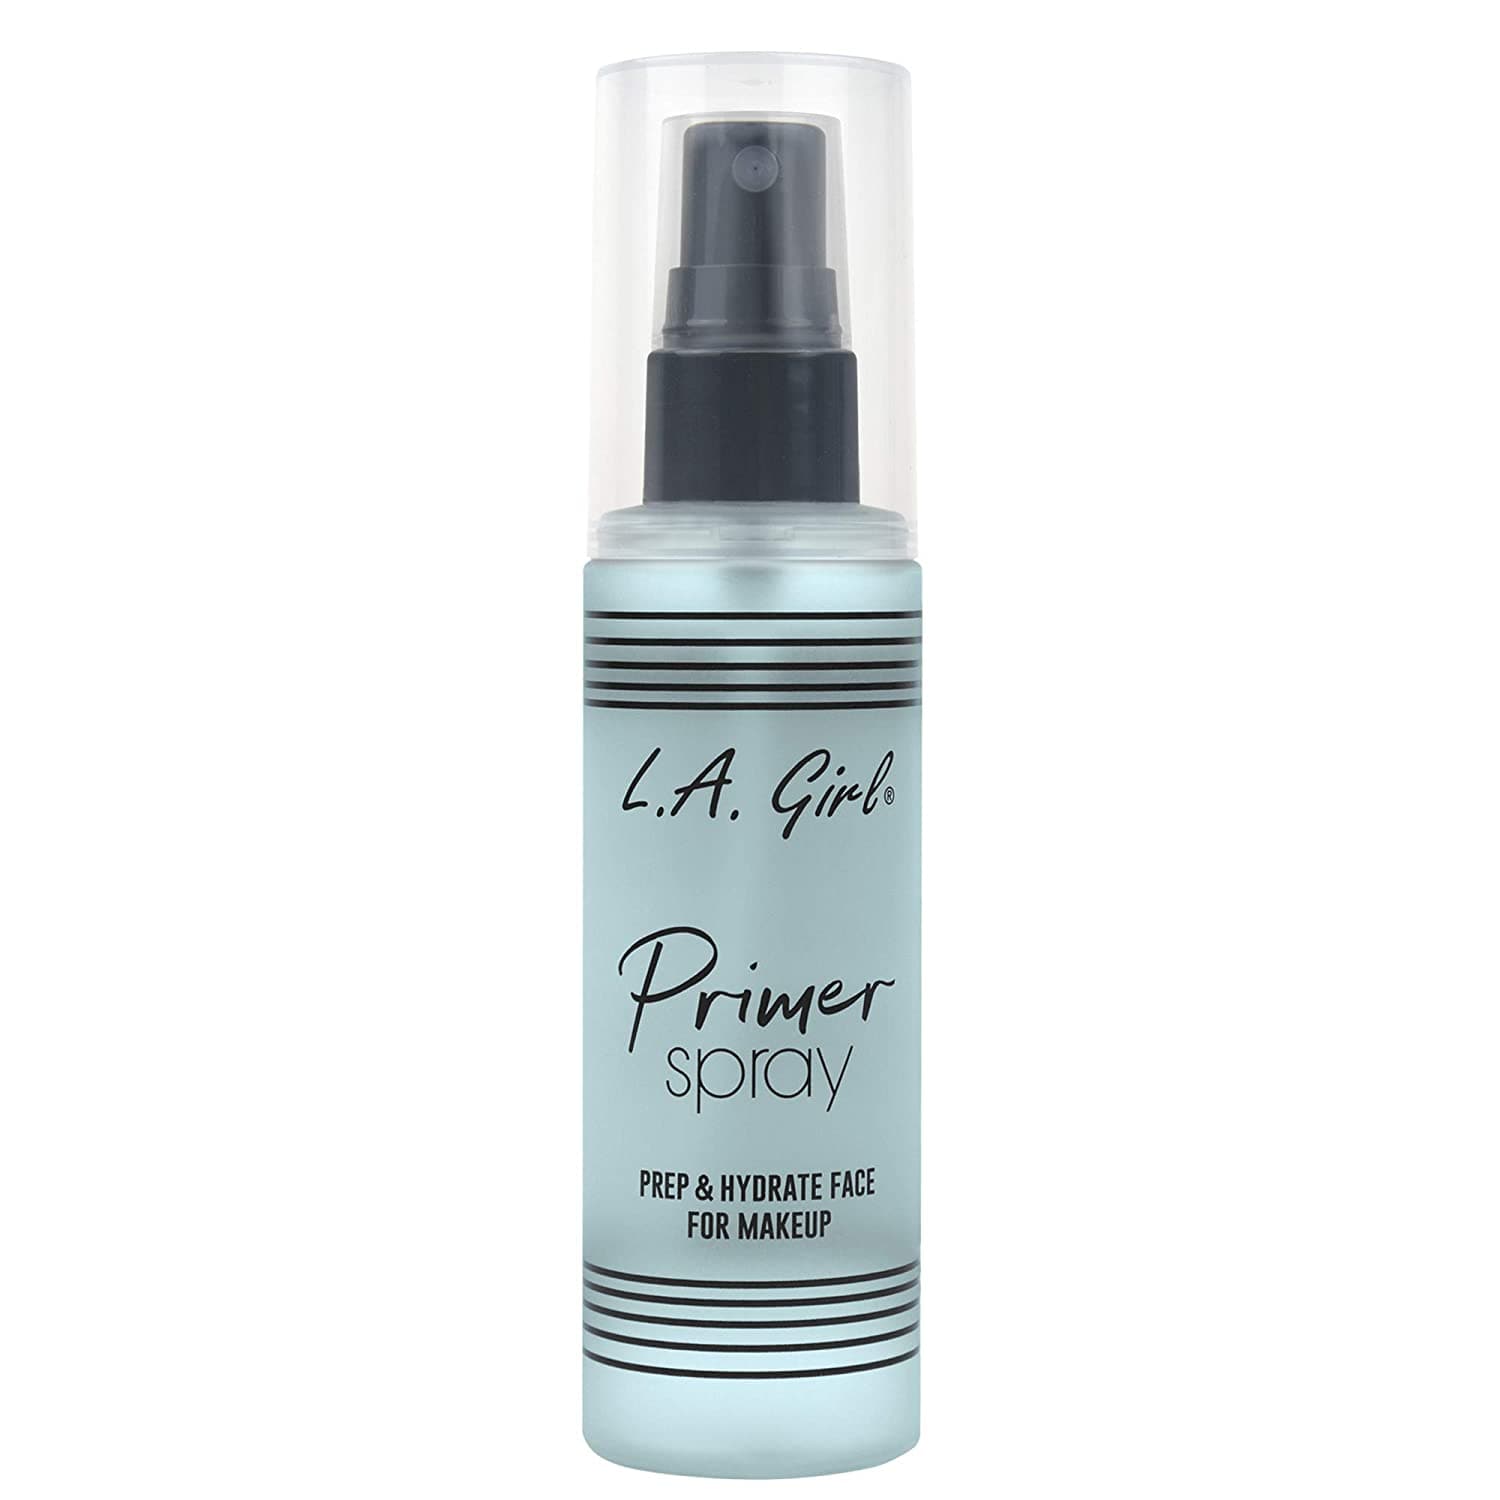 LA Girl Primer Spray Prep & Hydrate - 80ml - Premium Face Primer from LA Girl - Just Rs 3726! Shop now at Cozmetica